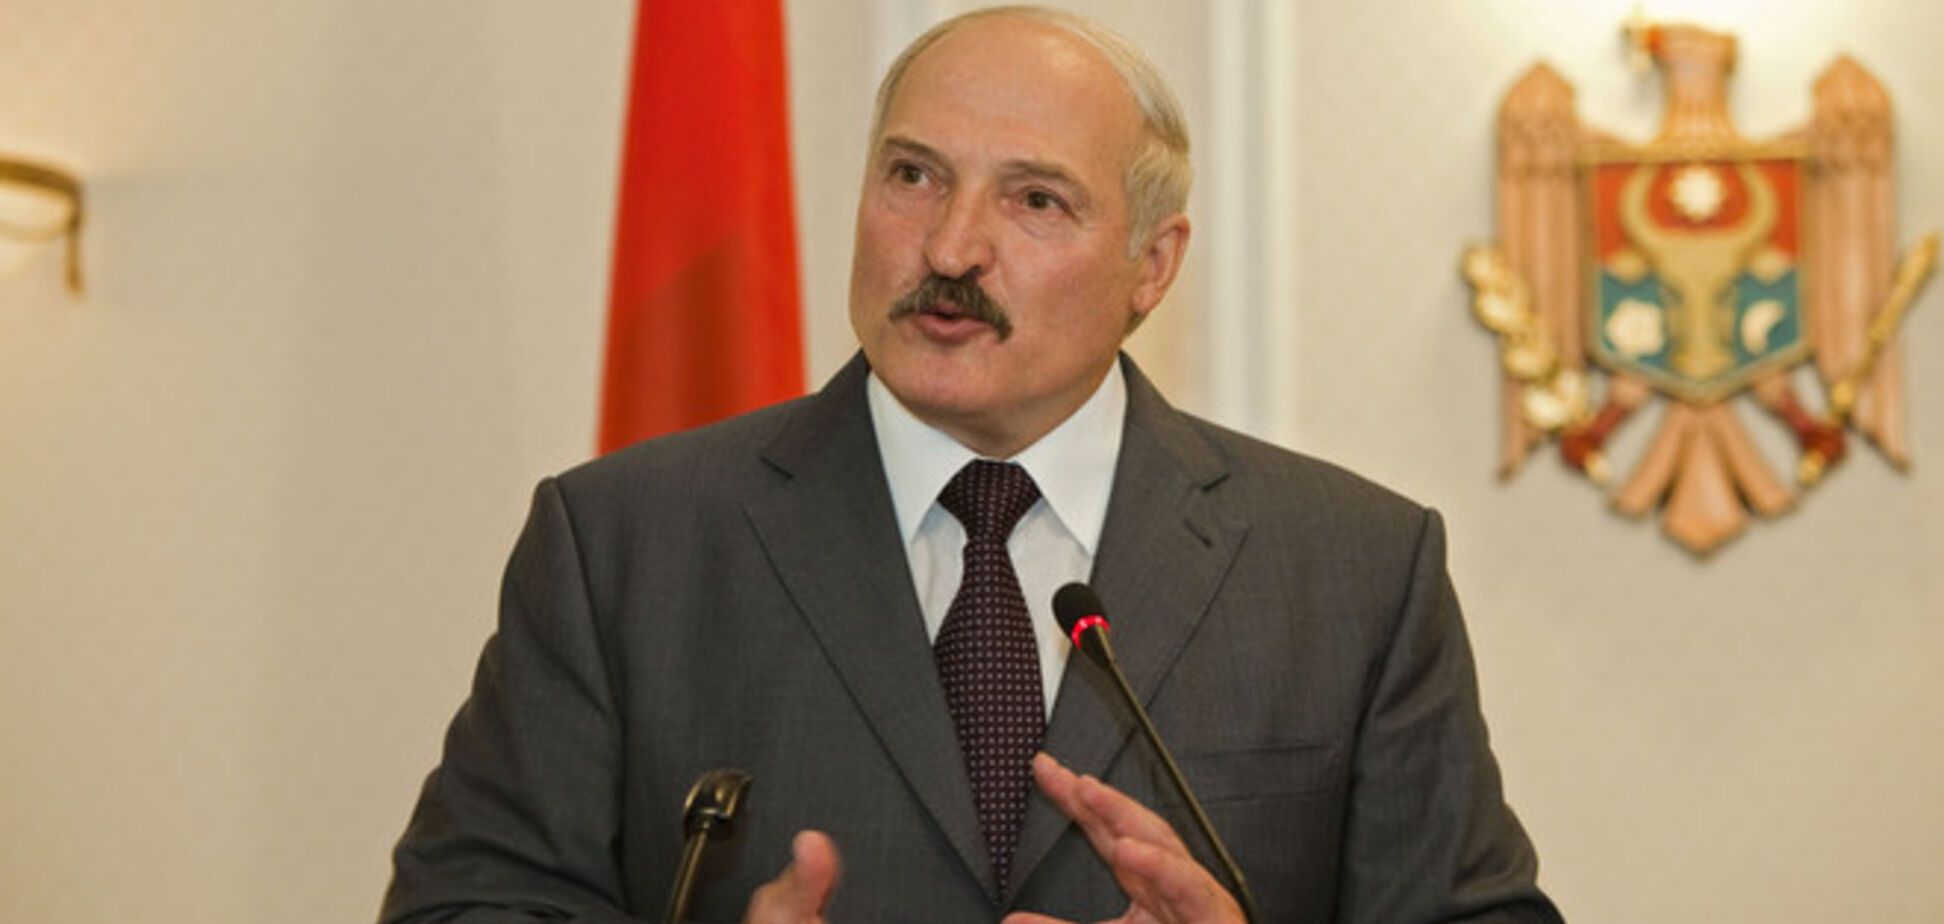 Лукашенко разорвал российских журналистов